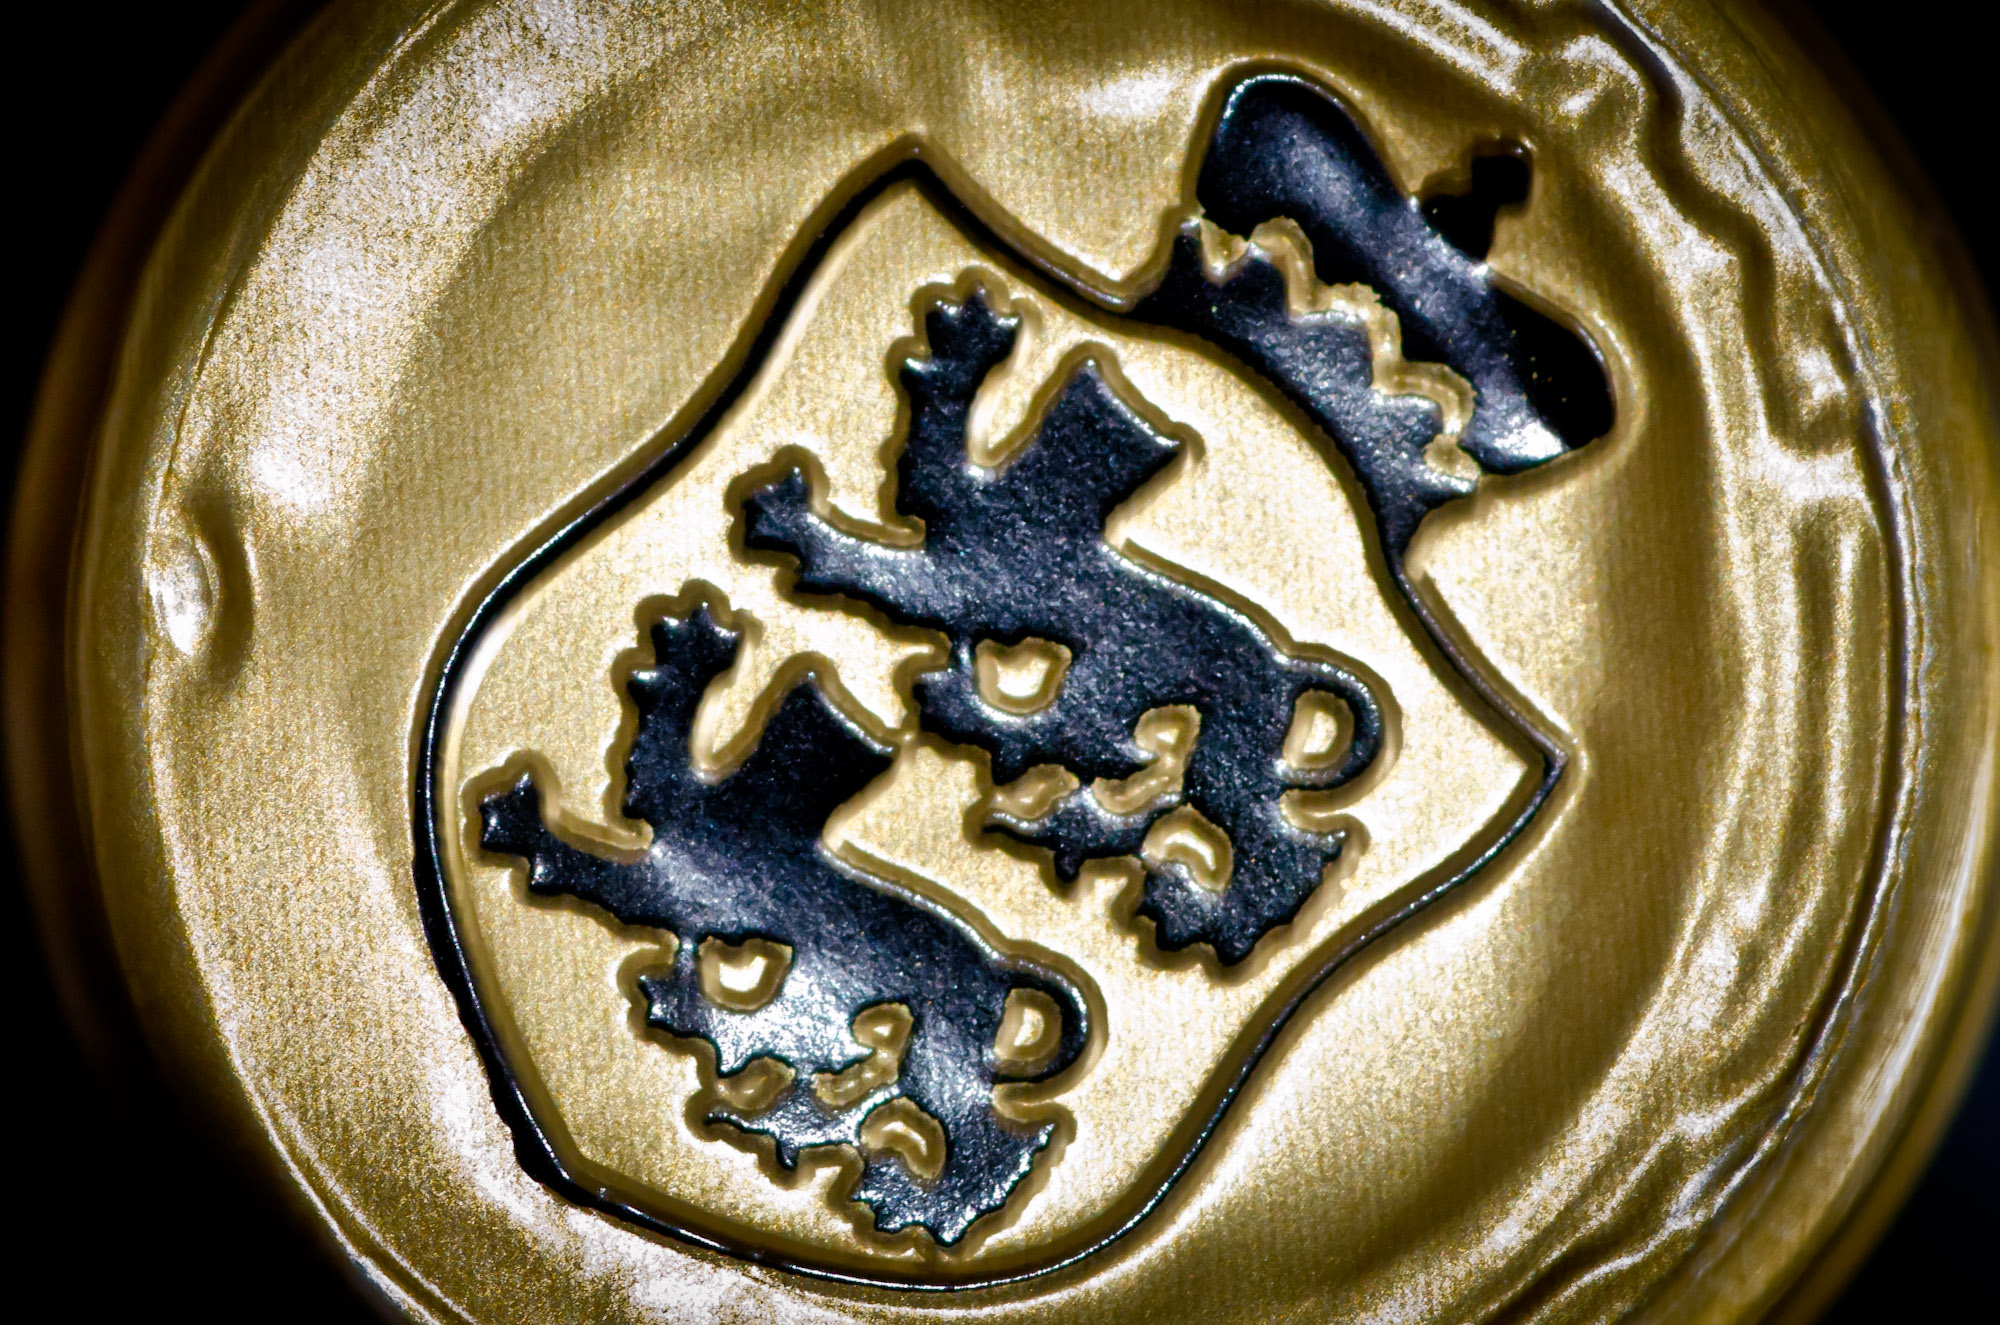 Swabian coat of arms - capsule detail